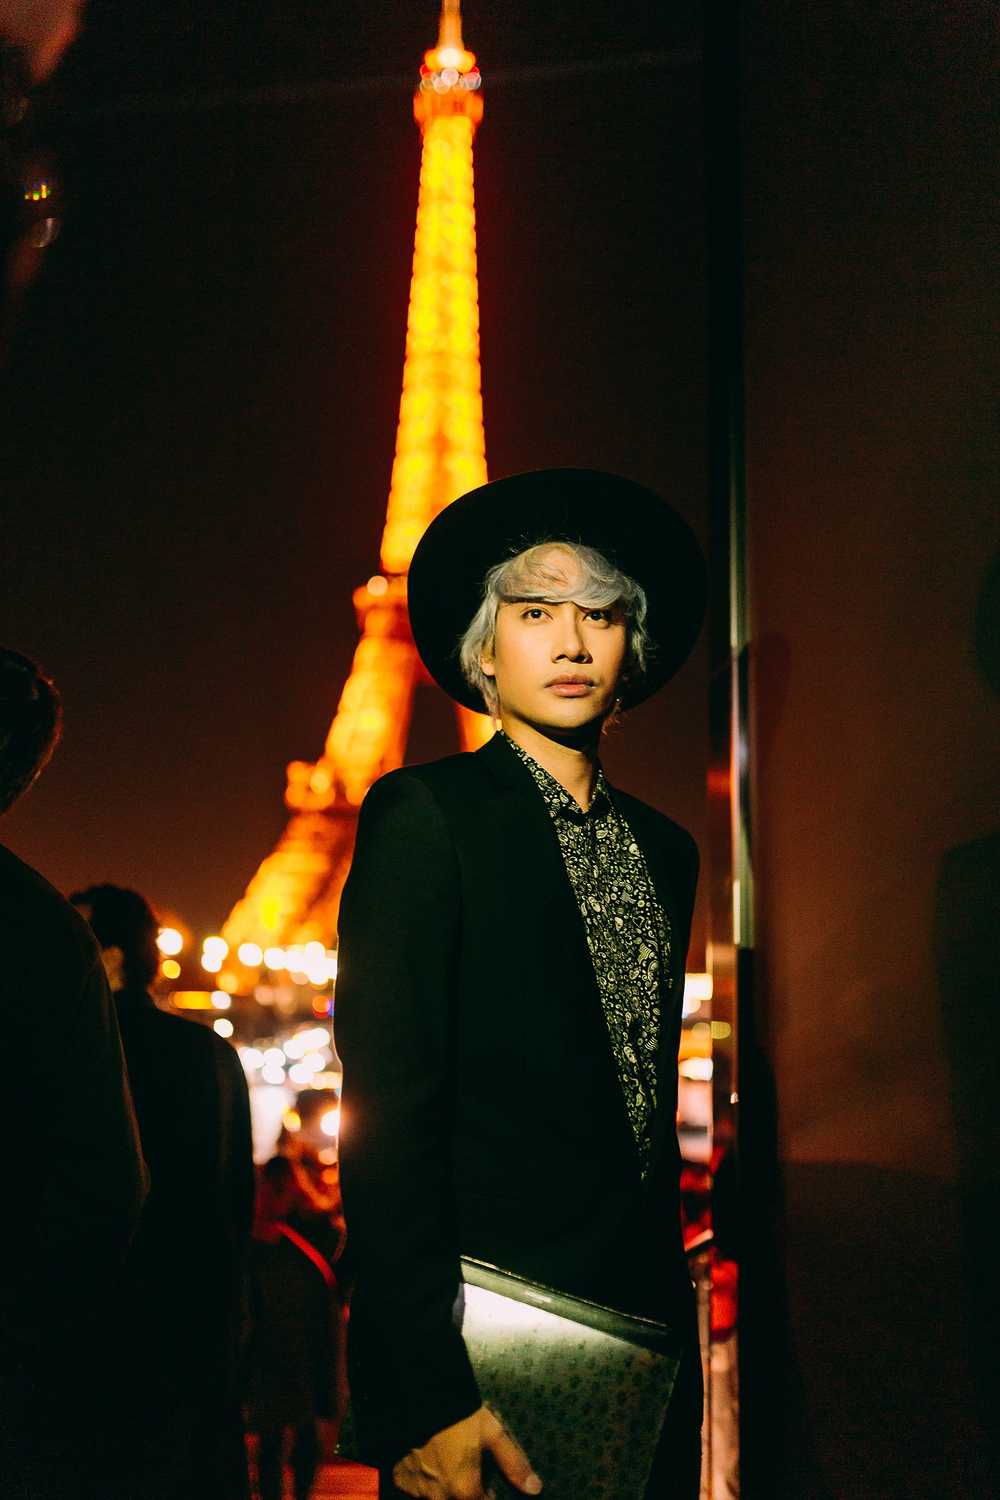 
Lý Quí Khánh nói anh rất thích ý tưởng tổ chức show ở nơi gần chân tháp Eiffel vì nó kết nối với câu chuyện của Saint Laurent, thương hiệu có lịch sử lâu đời của quốc gia này. Show diễn mang lại cho anh nhiều cảm hứng để làm thời trang cao cấp phục vụ khán giả trong nước.